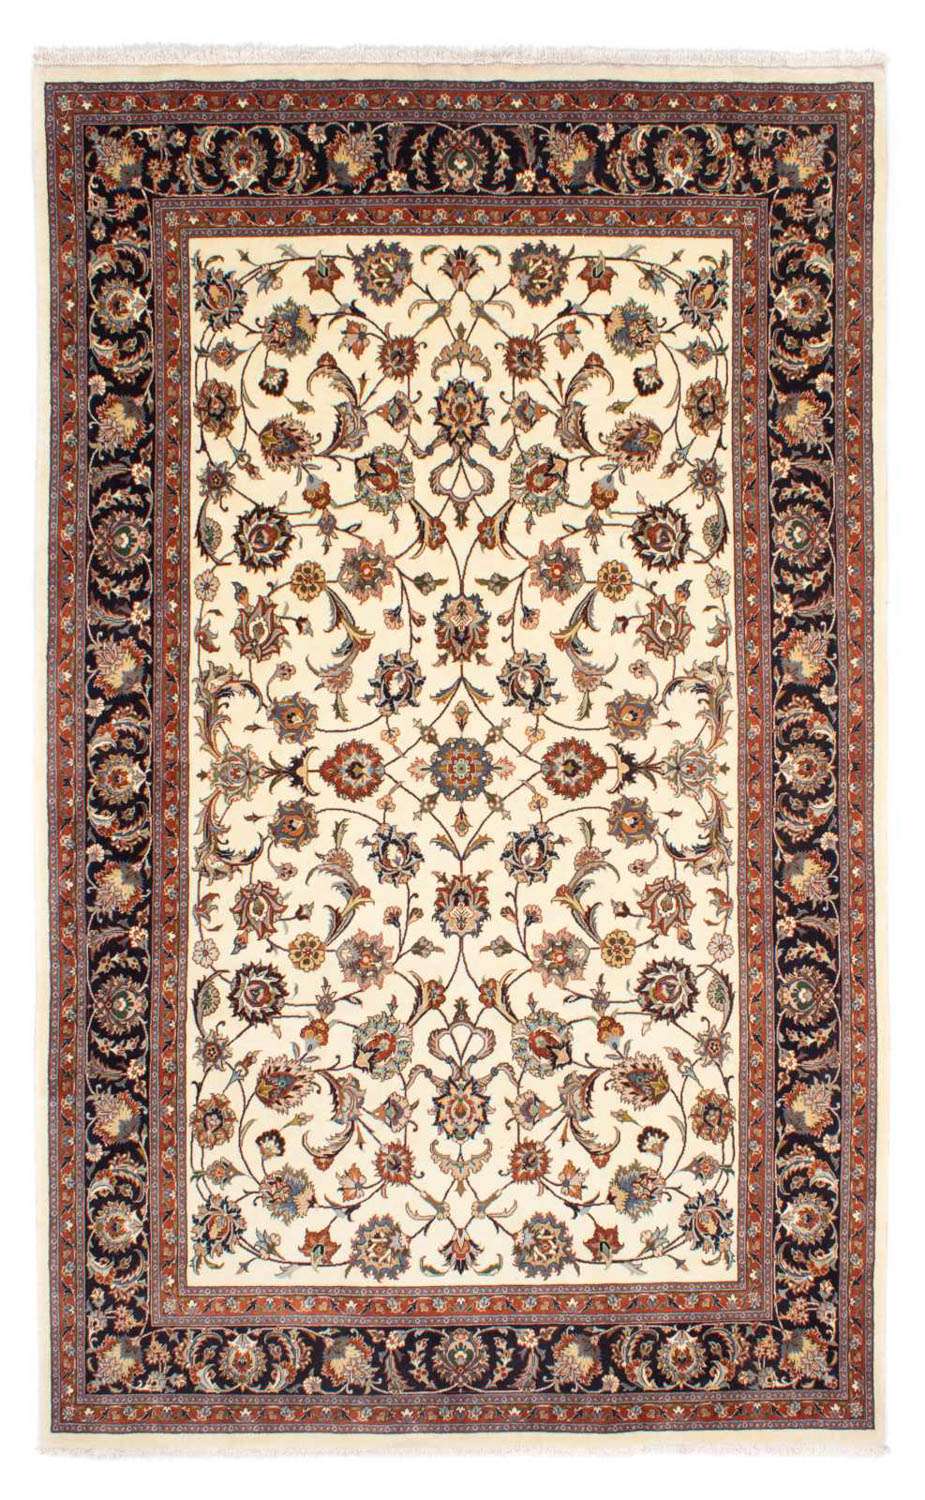 Tapis persan - Classique - 305 x 198 cm - beige